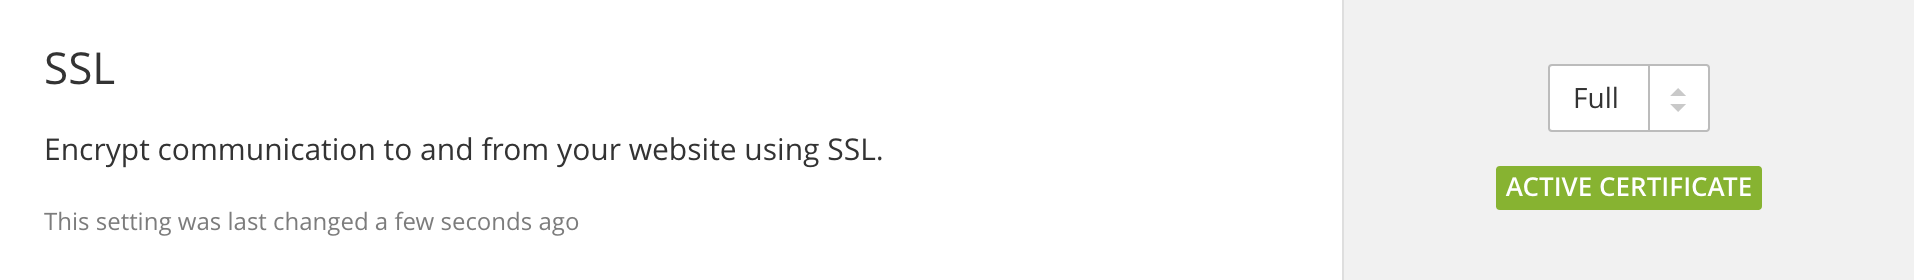 Cara Mudah Mendapatkan SSL Gratis - Jasa VPS Hosting Terbaik